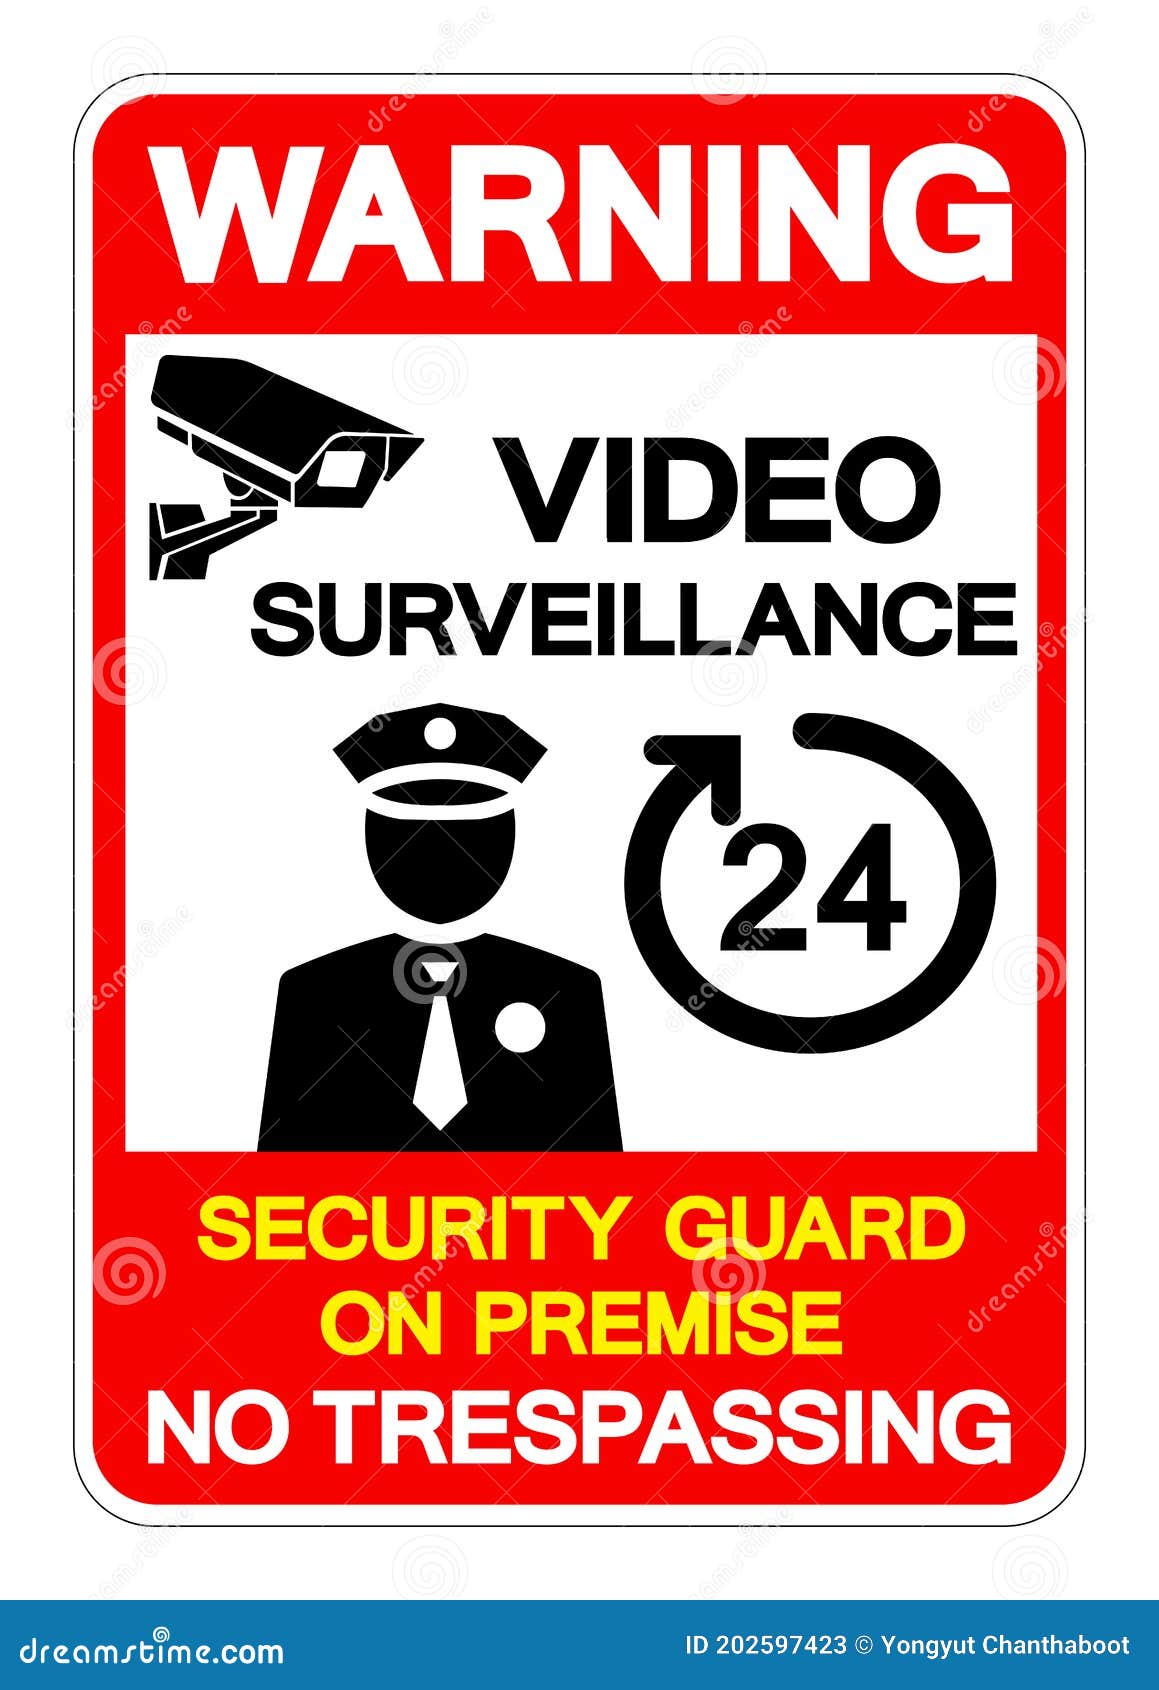 Hãy đến và xem những gì mà giám sát video trong 24 giờ có thể giúp bạn. Chúng tôi cam kết đảm bảo an ninh tuyệt đối cho bạn và sự an toàn của mọi người trong khu vực này.